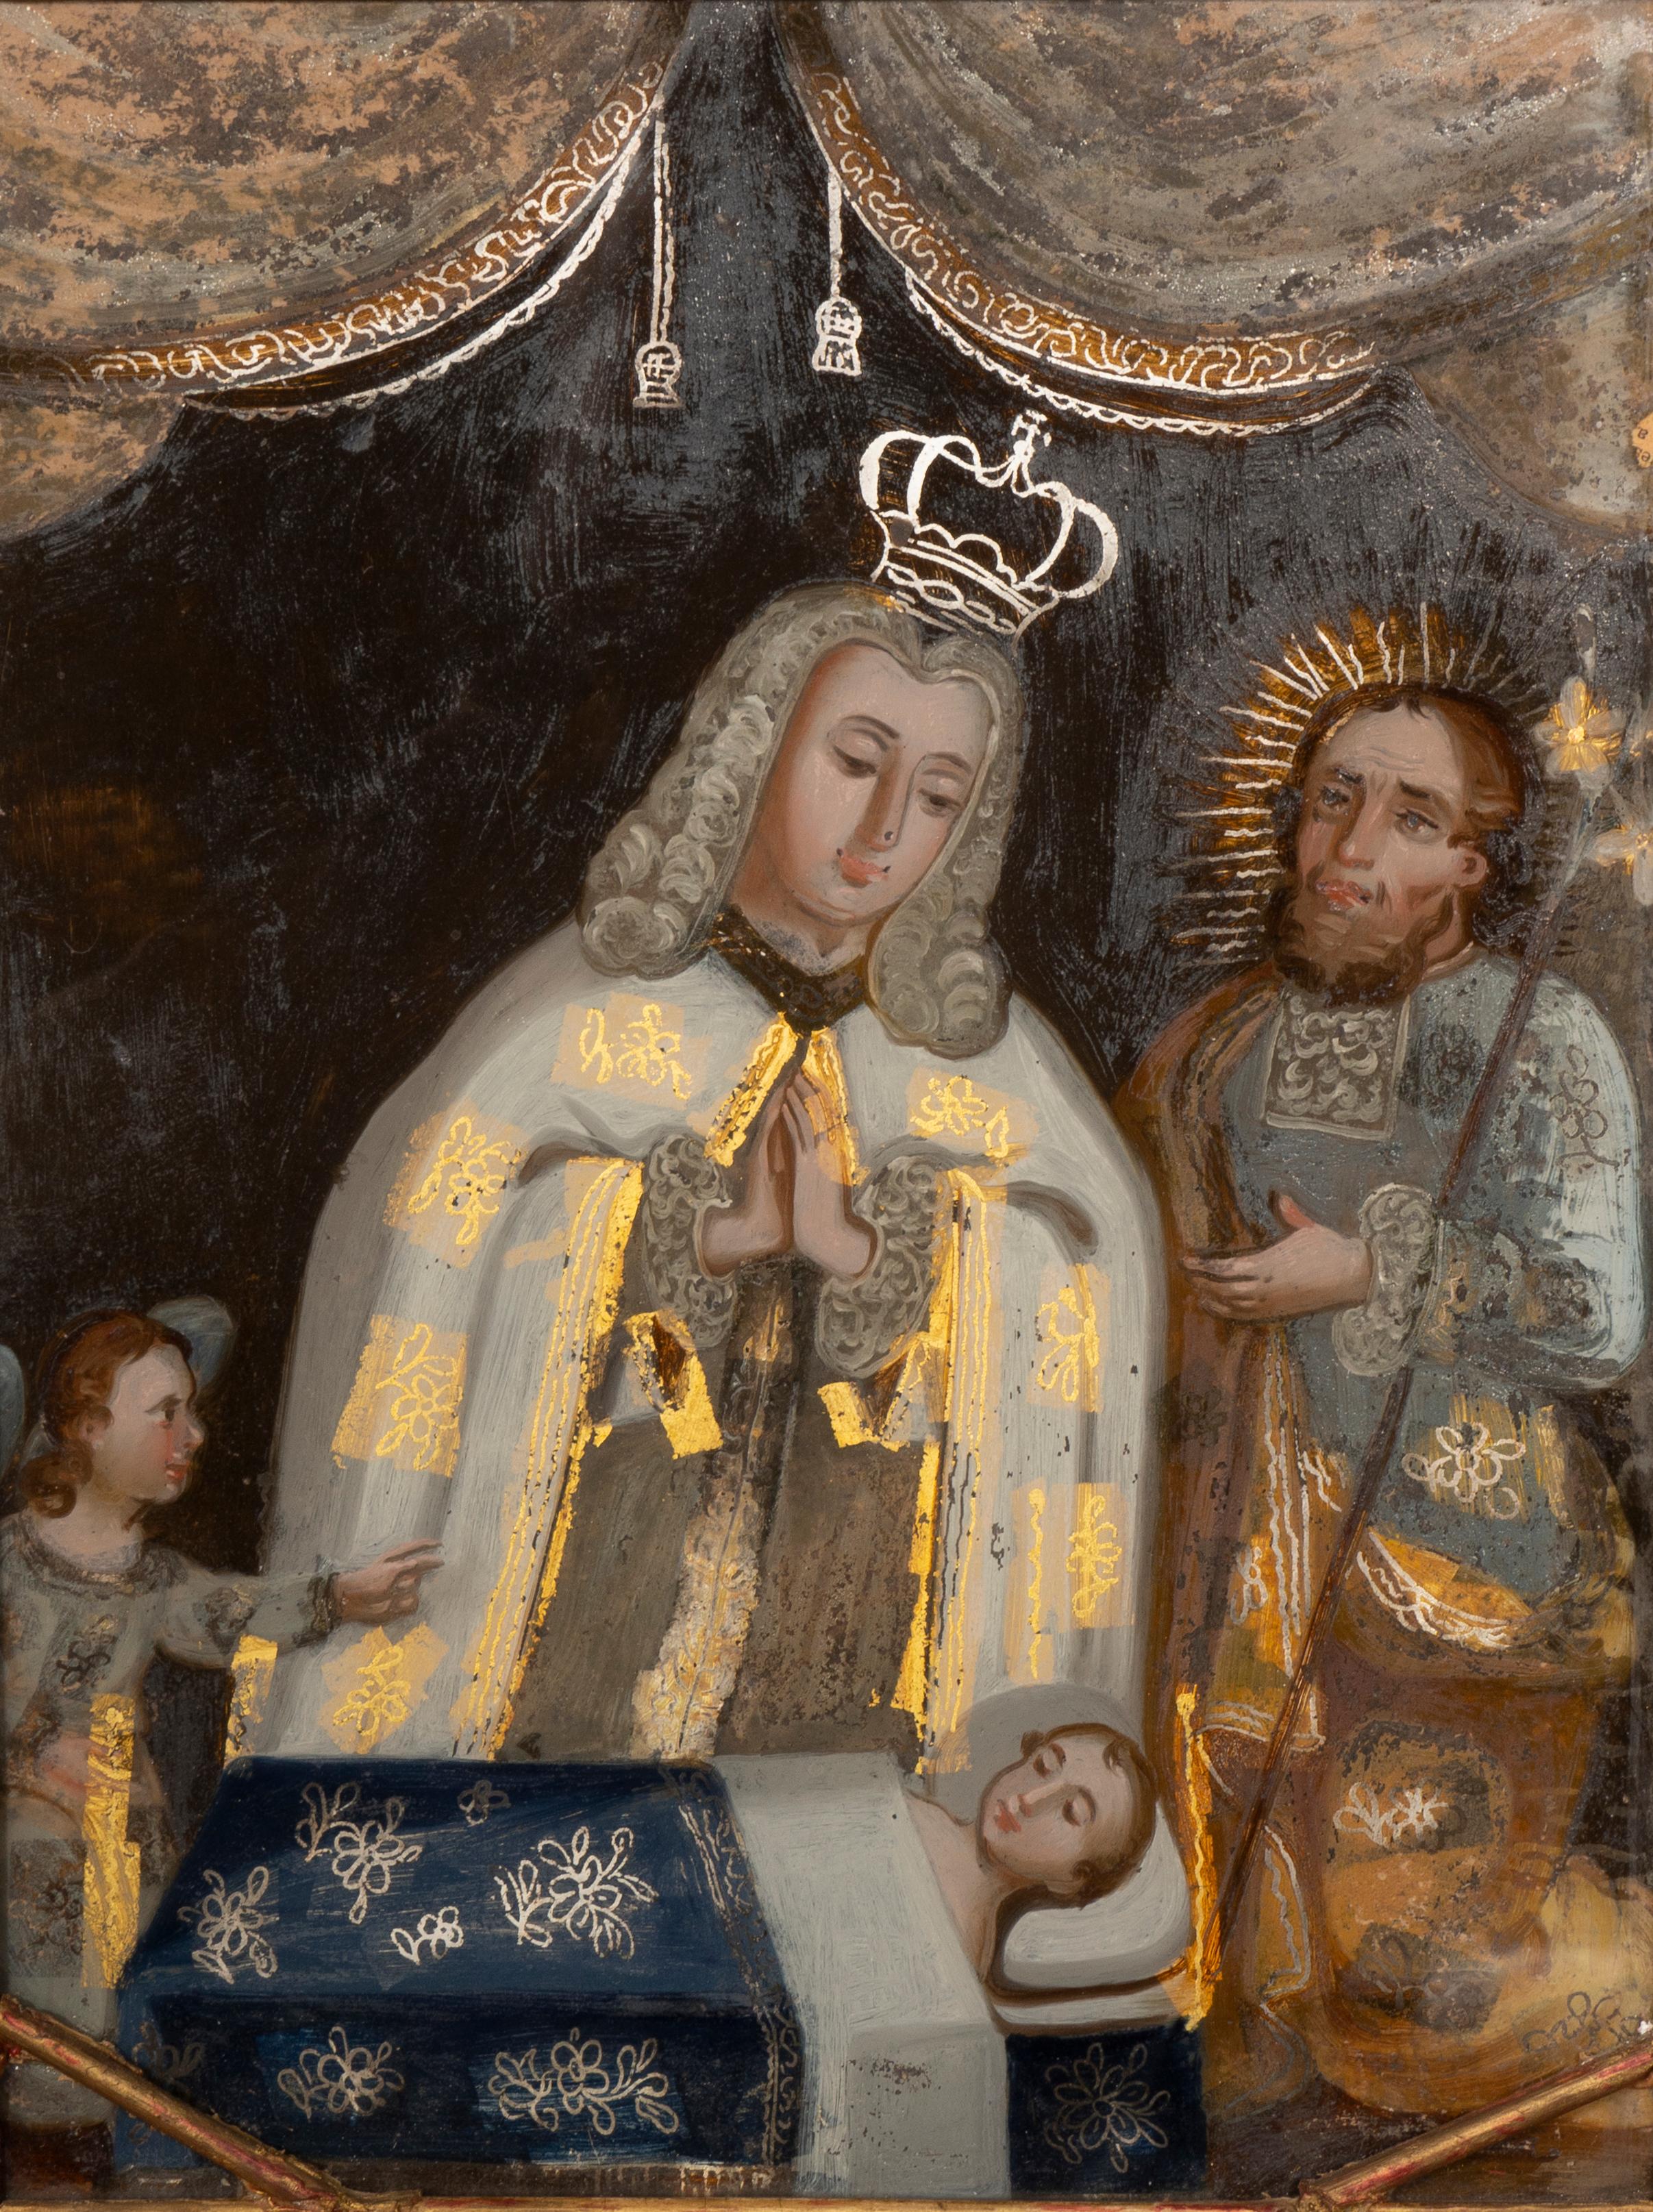 In einem Rahmen aus vergoldetem Holz mit der Szene eines Königs, der seine Hände über einem bettlägerigen Kind mit Christus an seiner Seite hält.